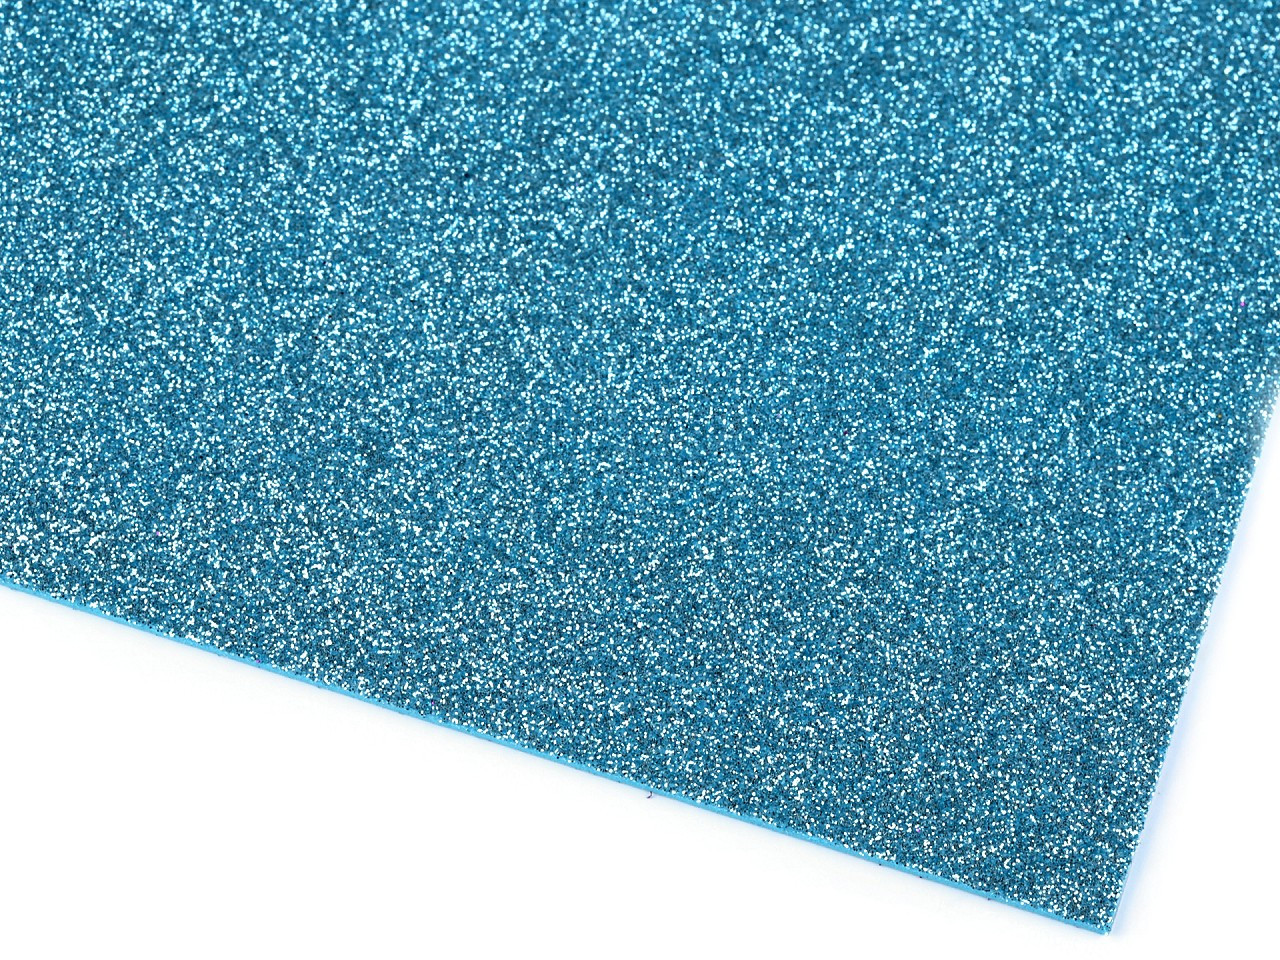 Samolepicí pěnová guma Moosgummi s glitry 20x30 cm, barva 8 modrá světlá